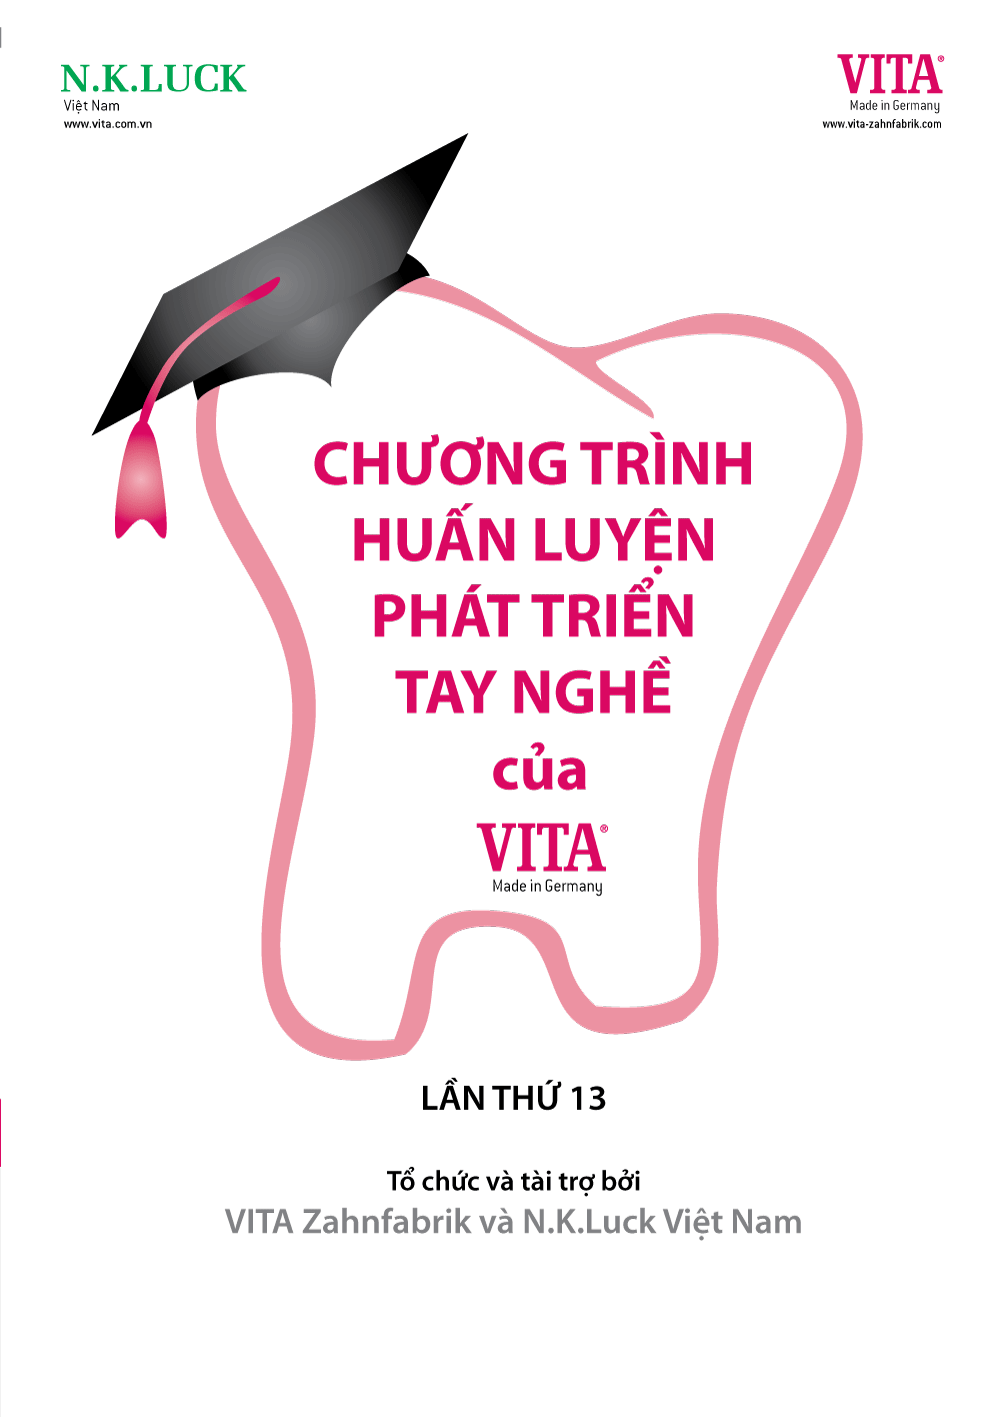 Chương trình HUẤN LUYỆN TAY NGHỀ VITA 8-2017 tại Hà Nội, Đà Nẵng, TP.HCM